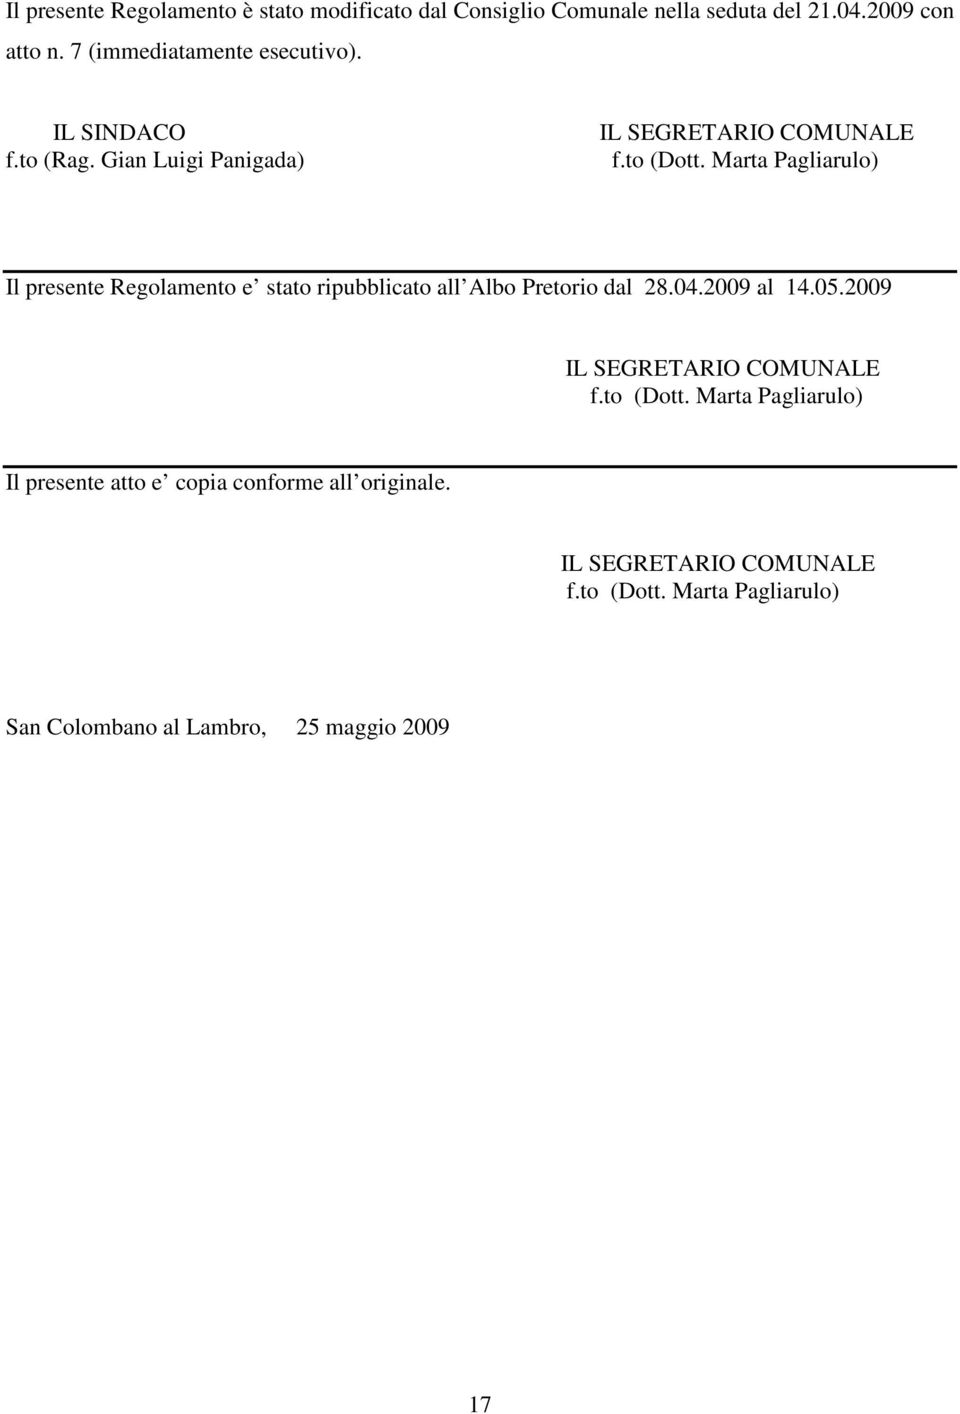 Marta Pagliarulo) Il presente Regolamento e stato ripubblicato all Albo Pretorio dal 28.04.2009 al 14.05.